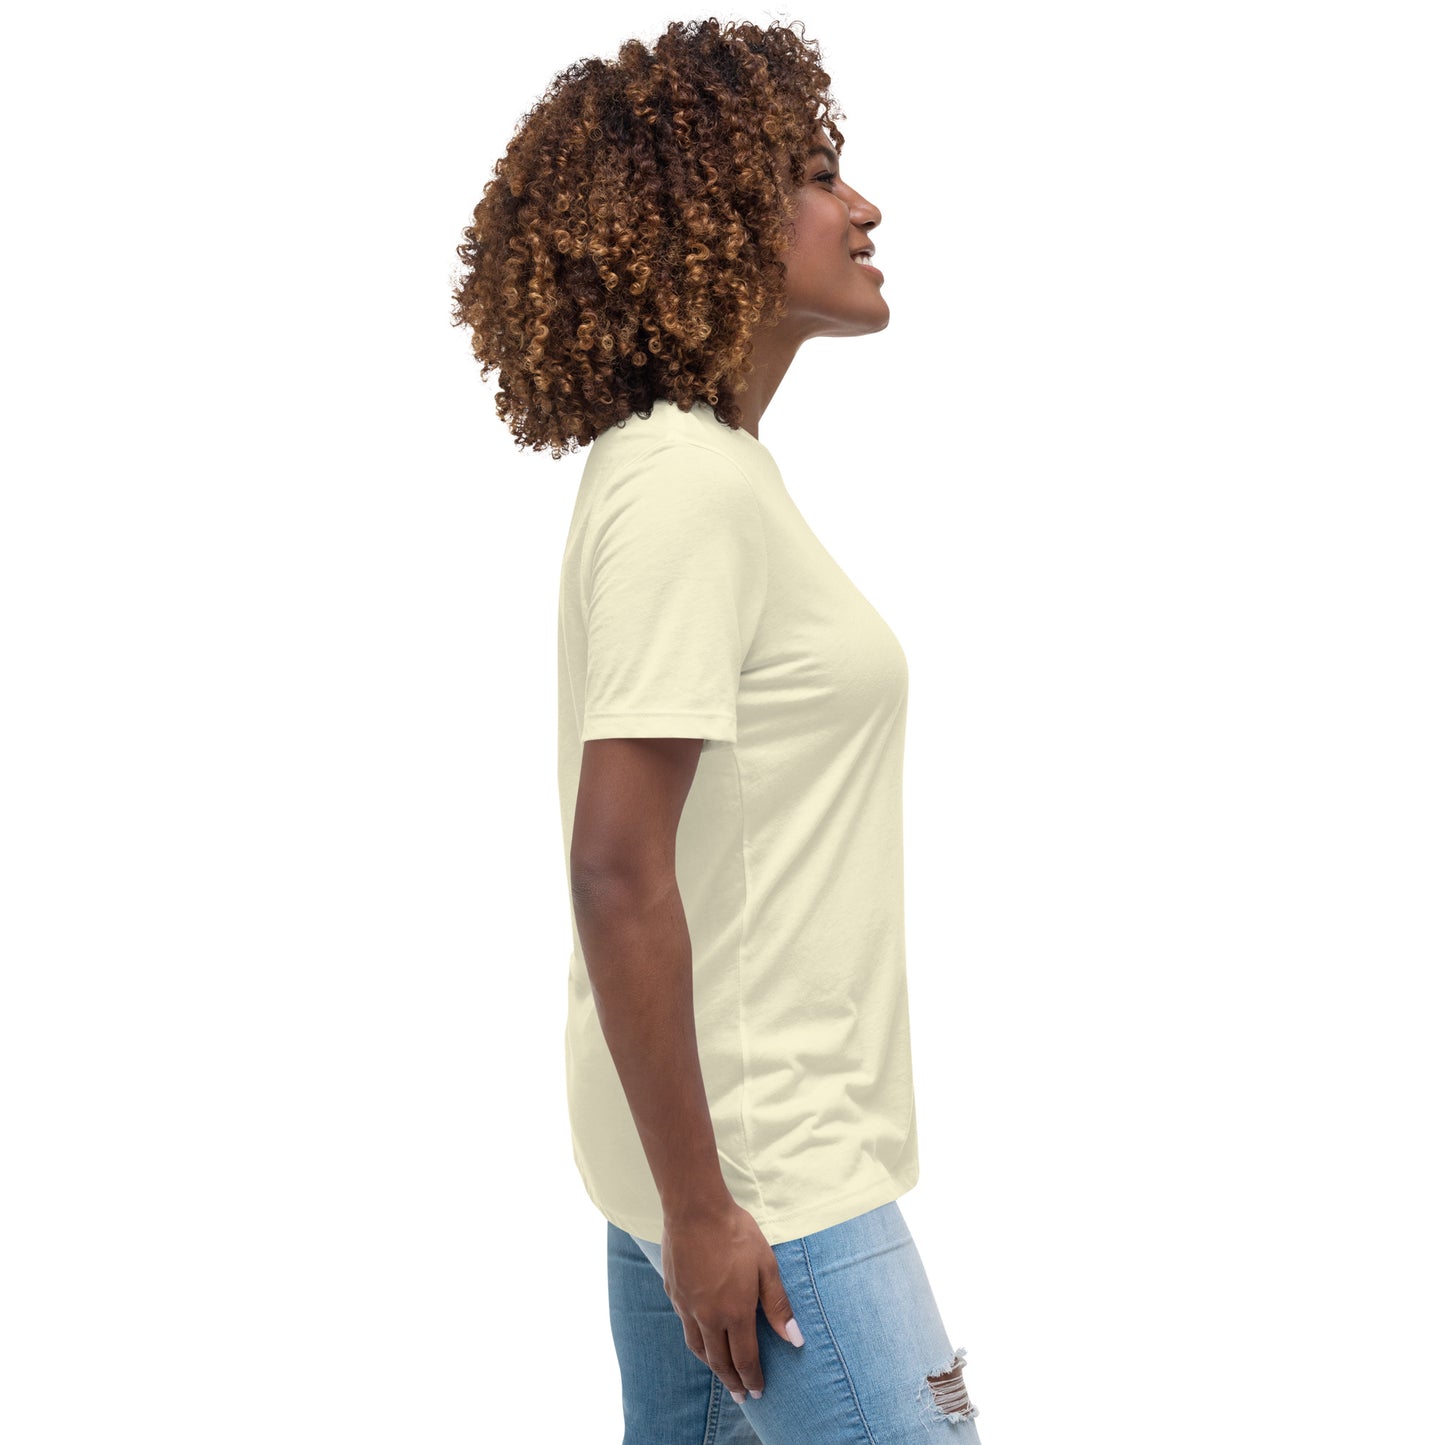 Love Vertical Print: Women's Relaxed T-Shirt